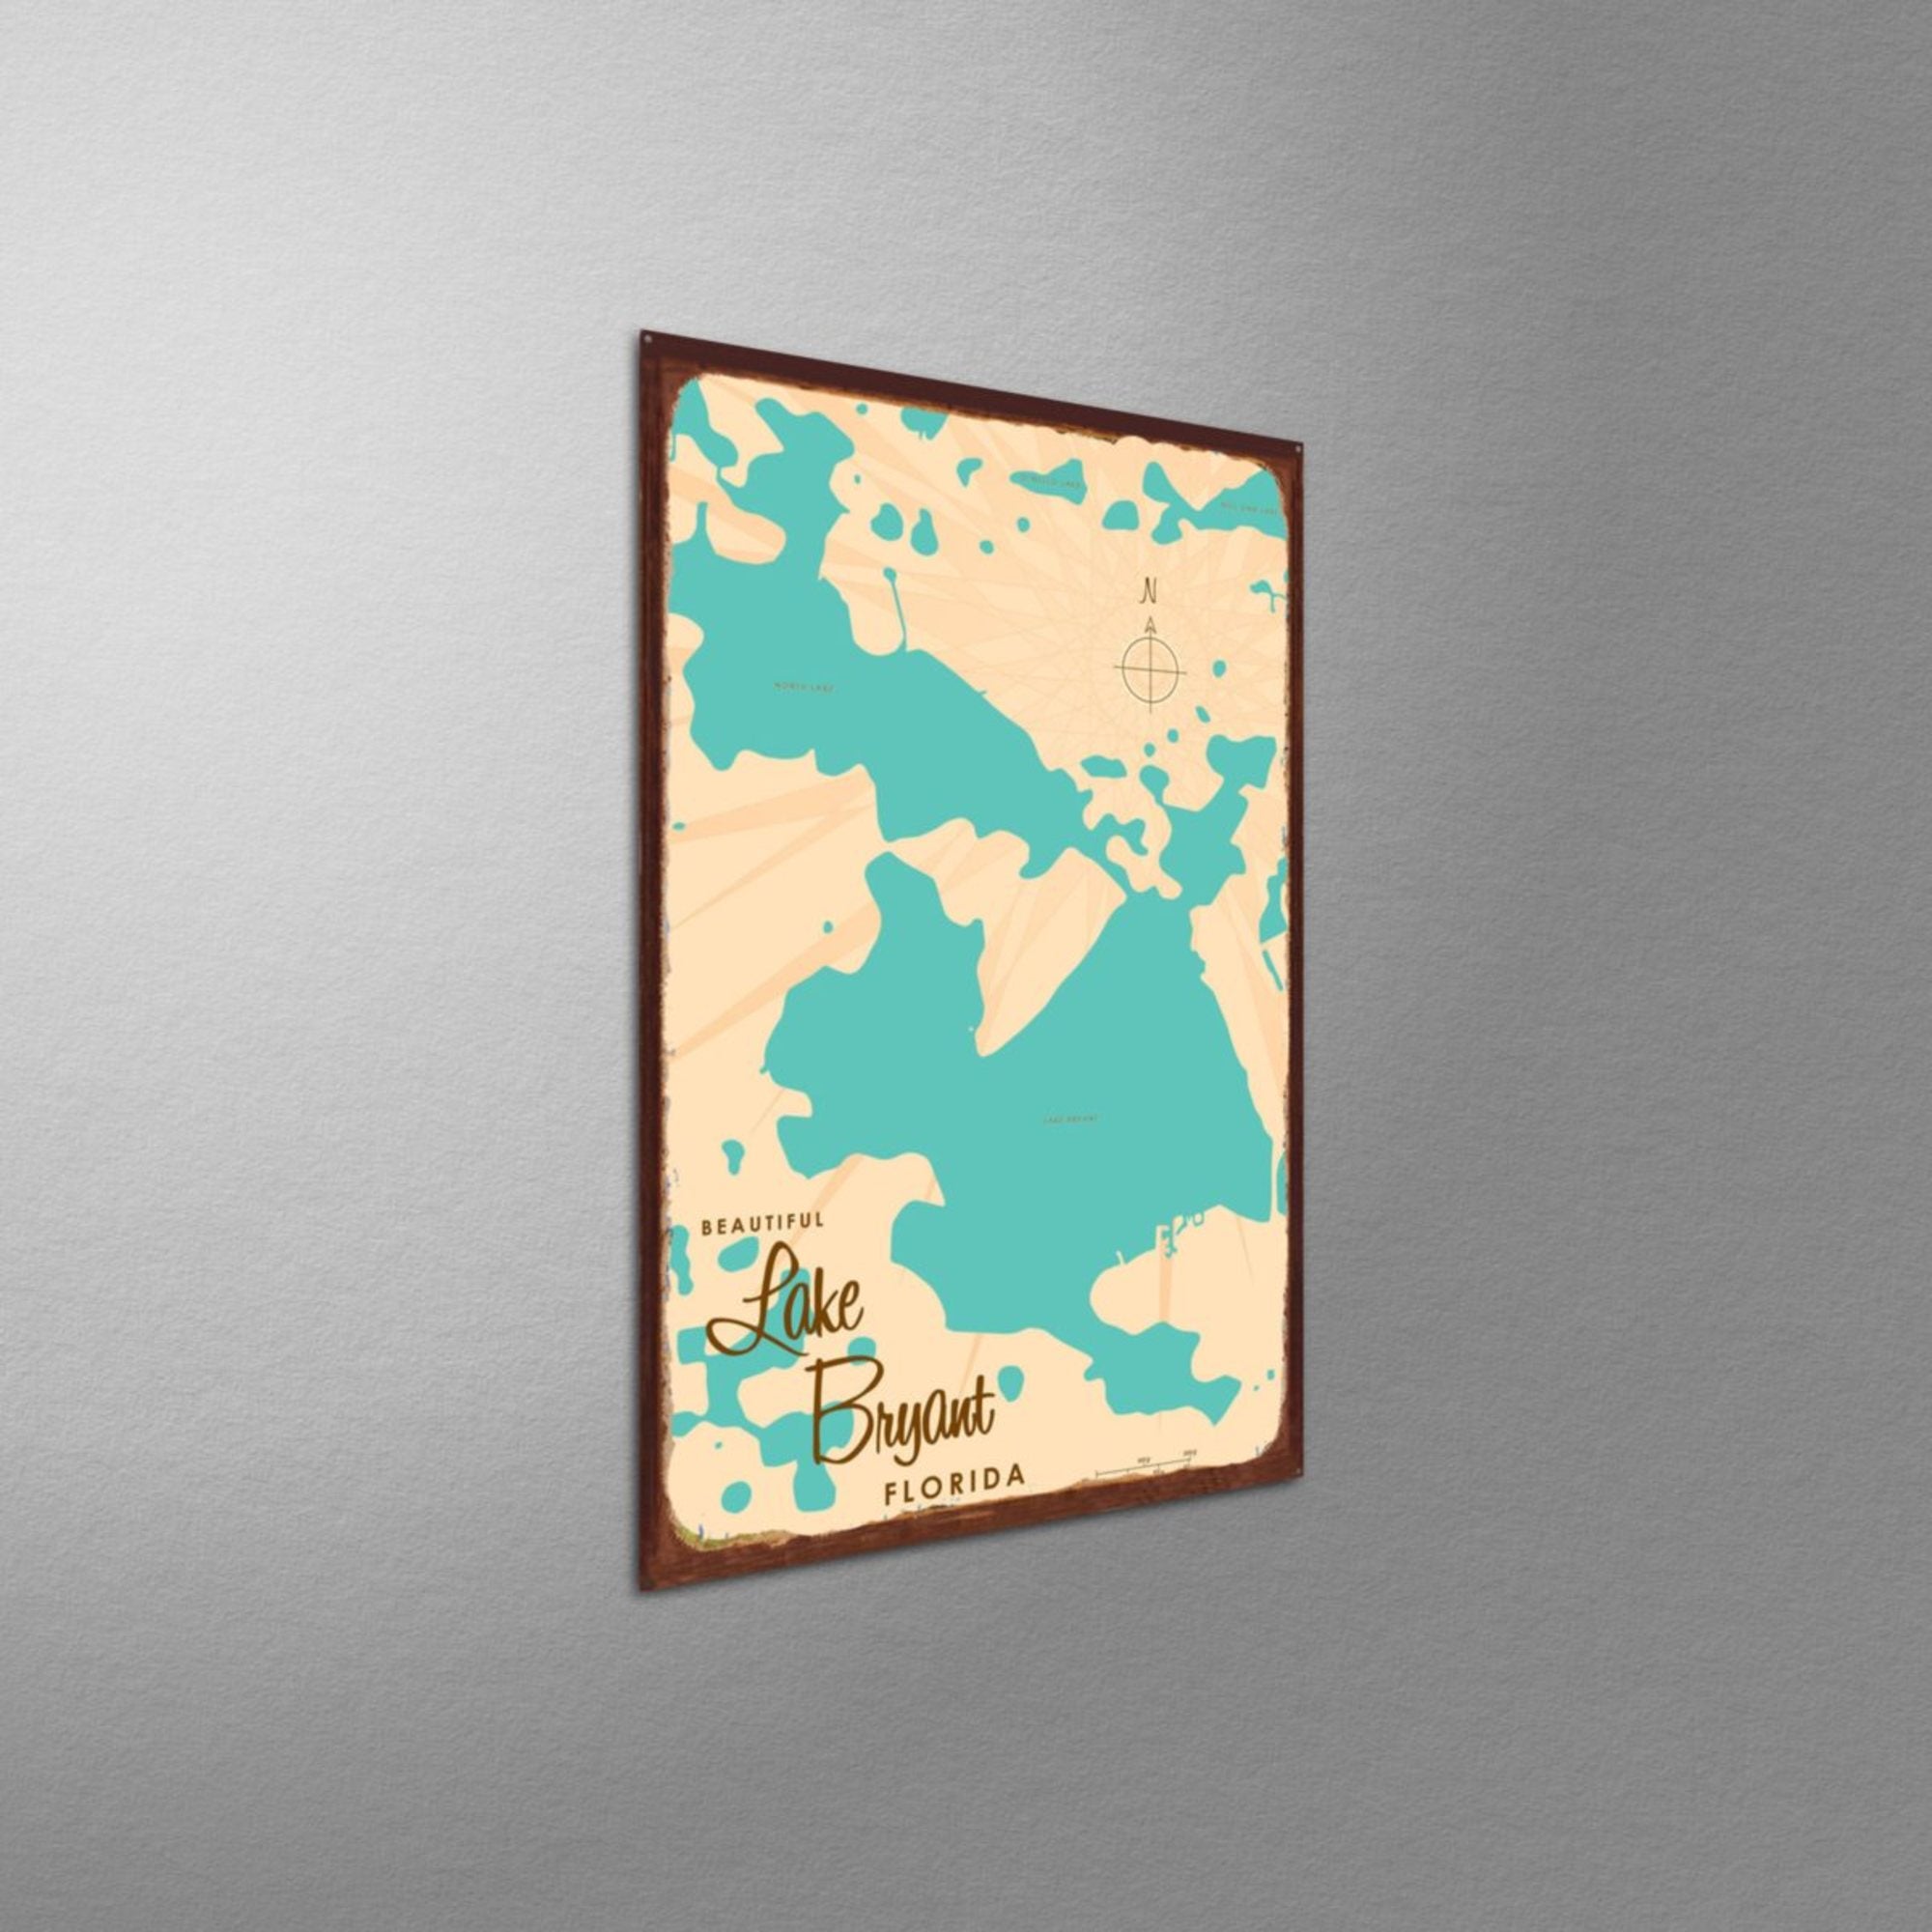 Lake Bryant Florida, Rustic Metal Sign Map Art